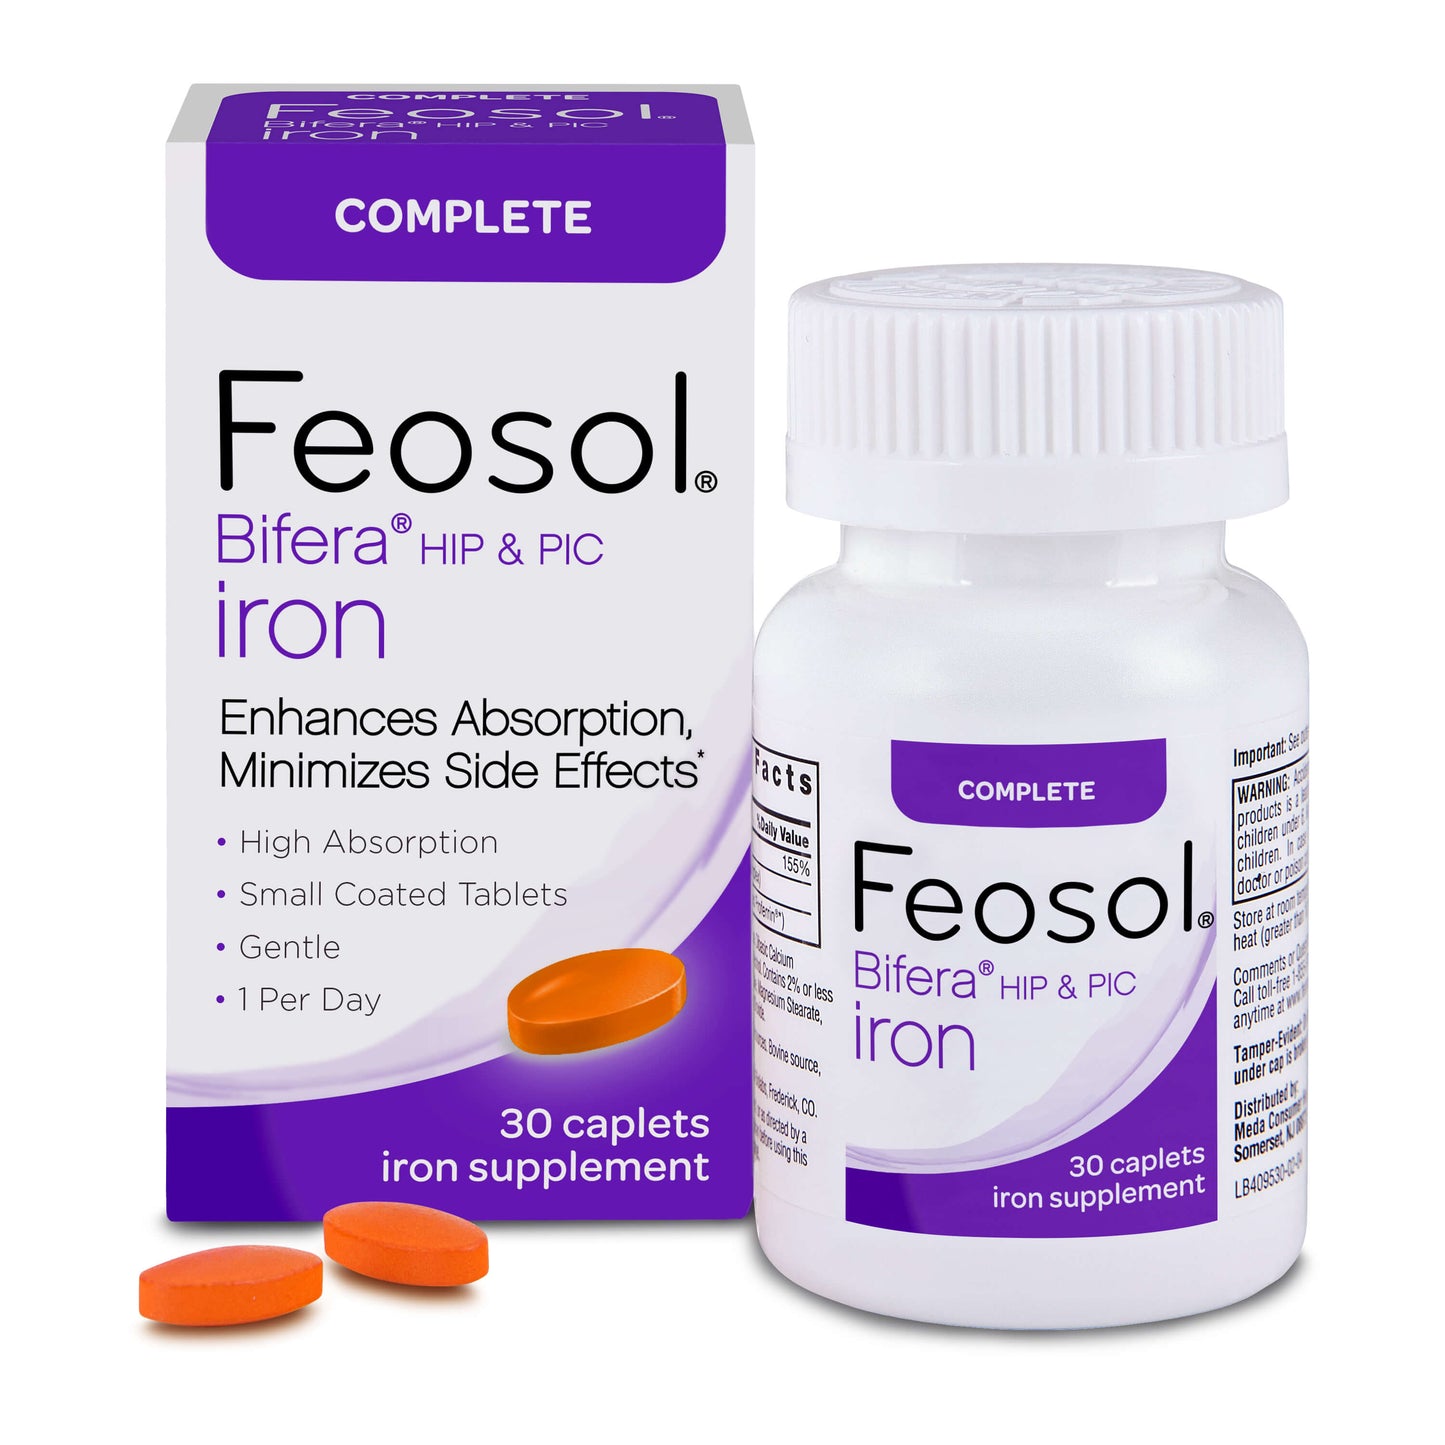 Feosol Complete